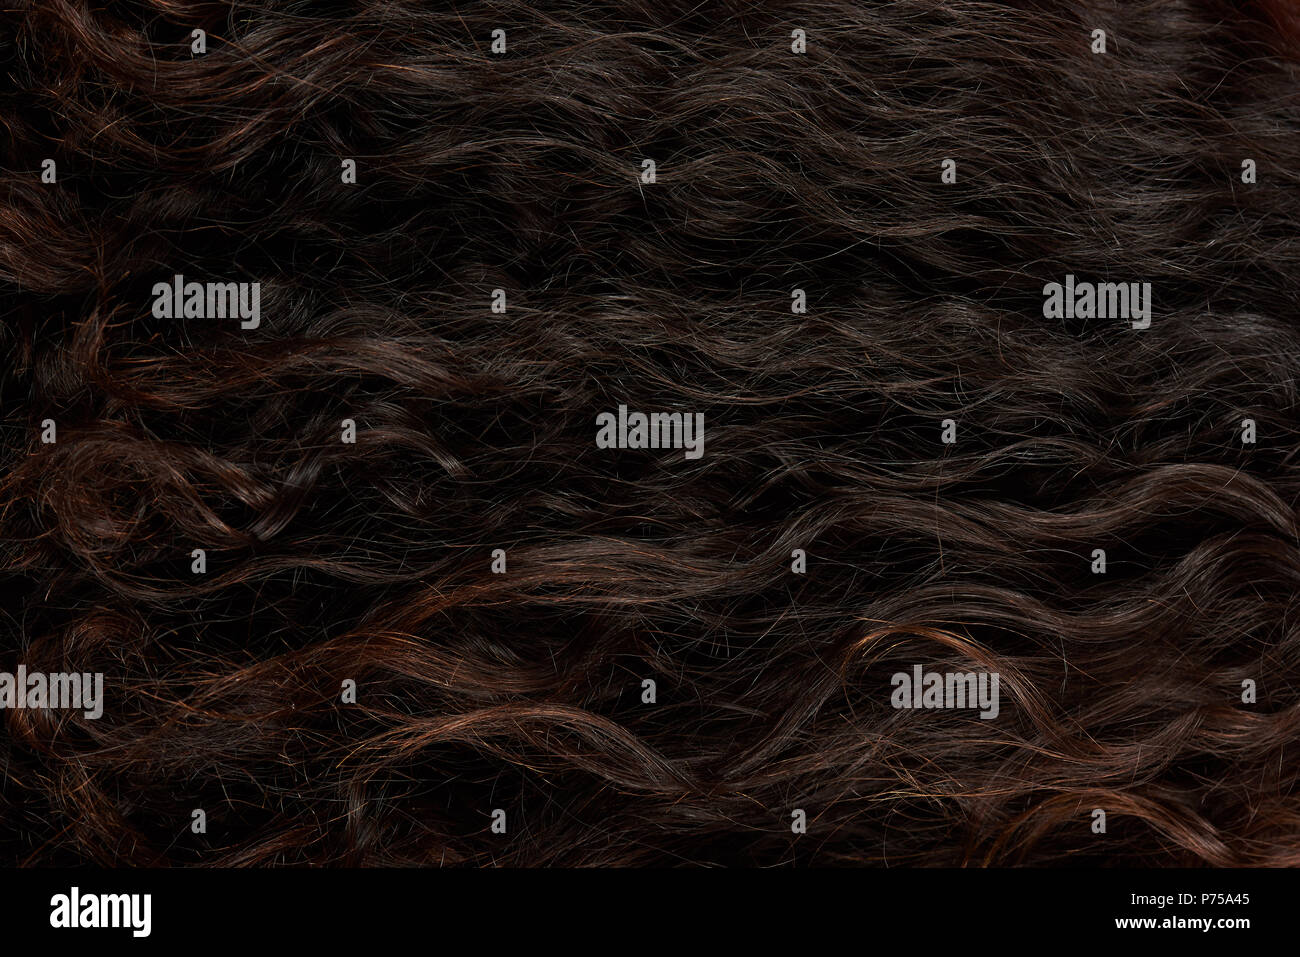 La texture des cheveux bouclés ondulés femme sombre vue rapprochée Banque D'Images